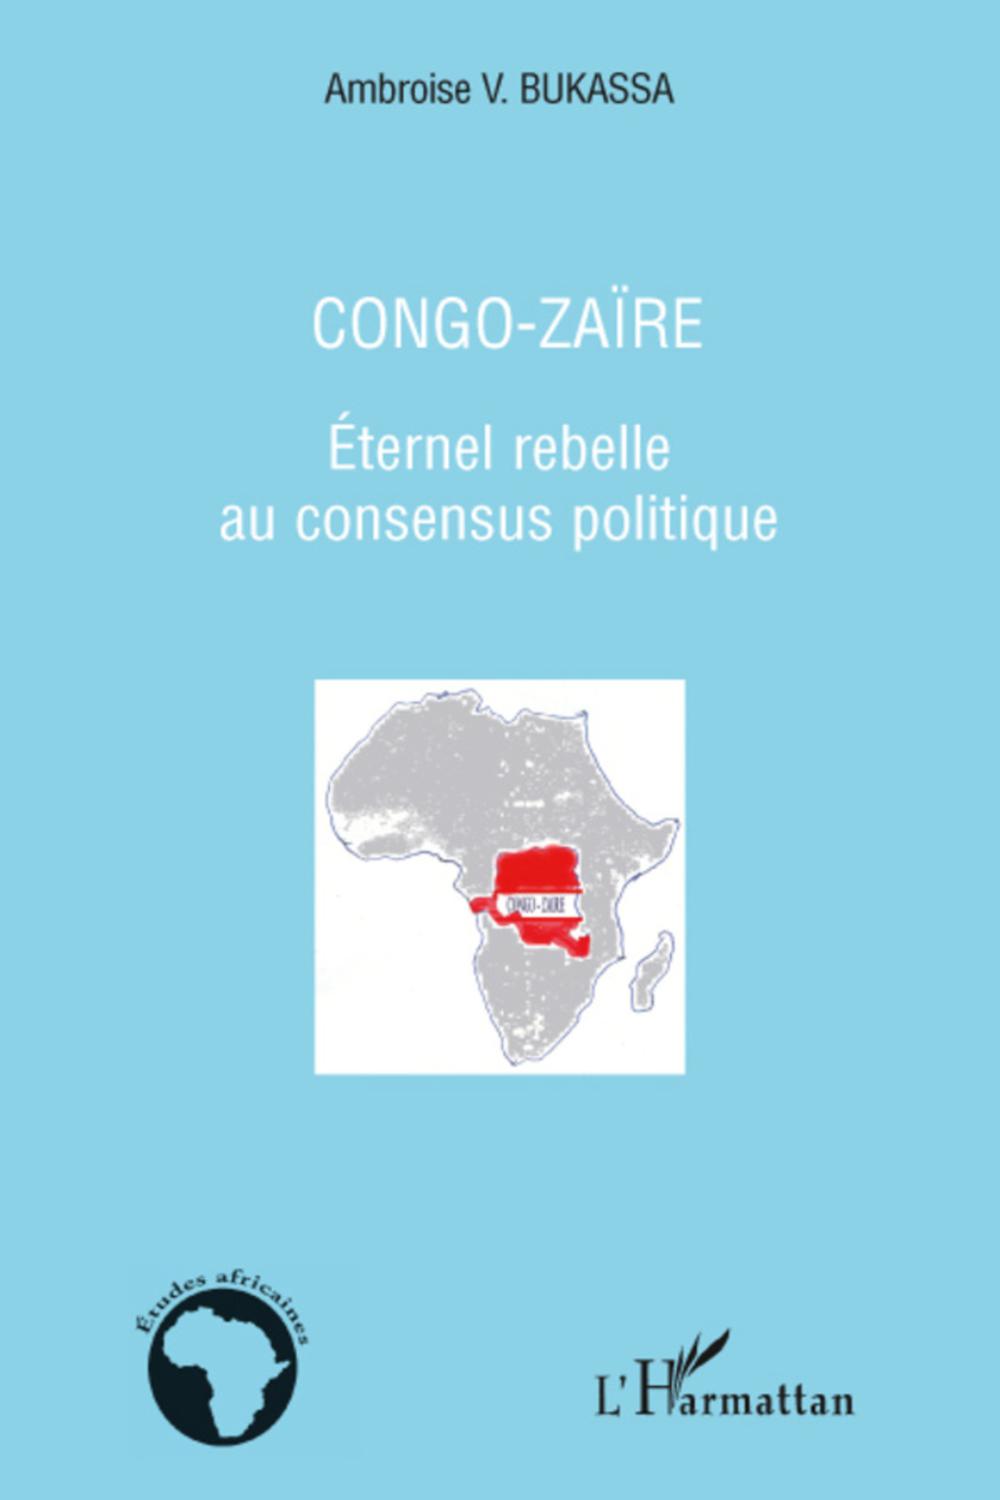 Congo-Zaïre - Ambroise V. Bukassa